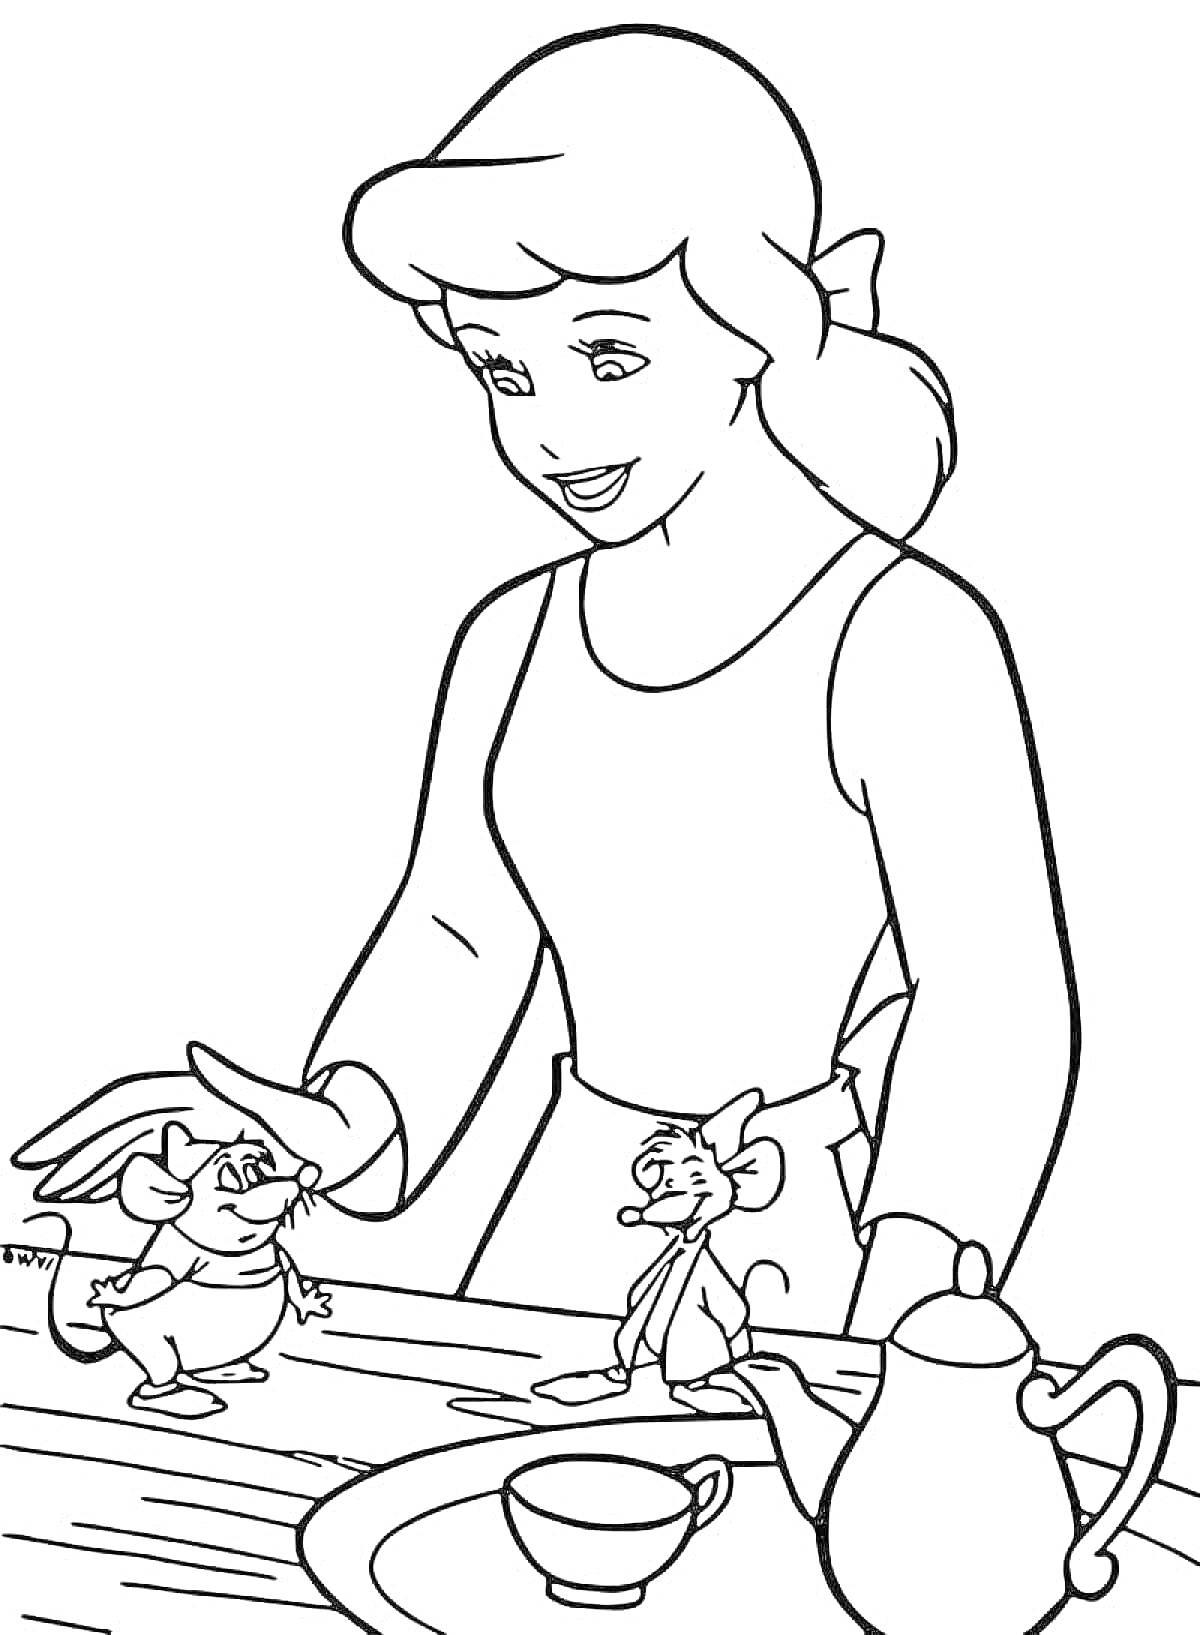 Раскраска Золушка с двумя мышами, чайник и чашка на столе